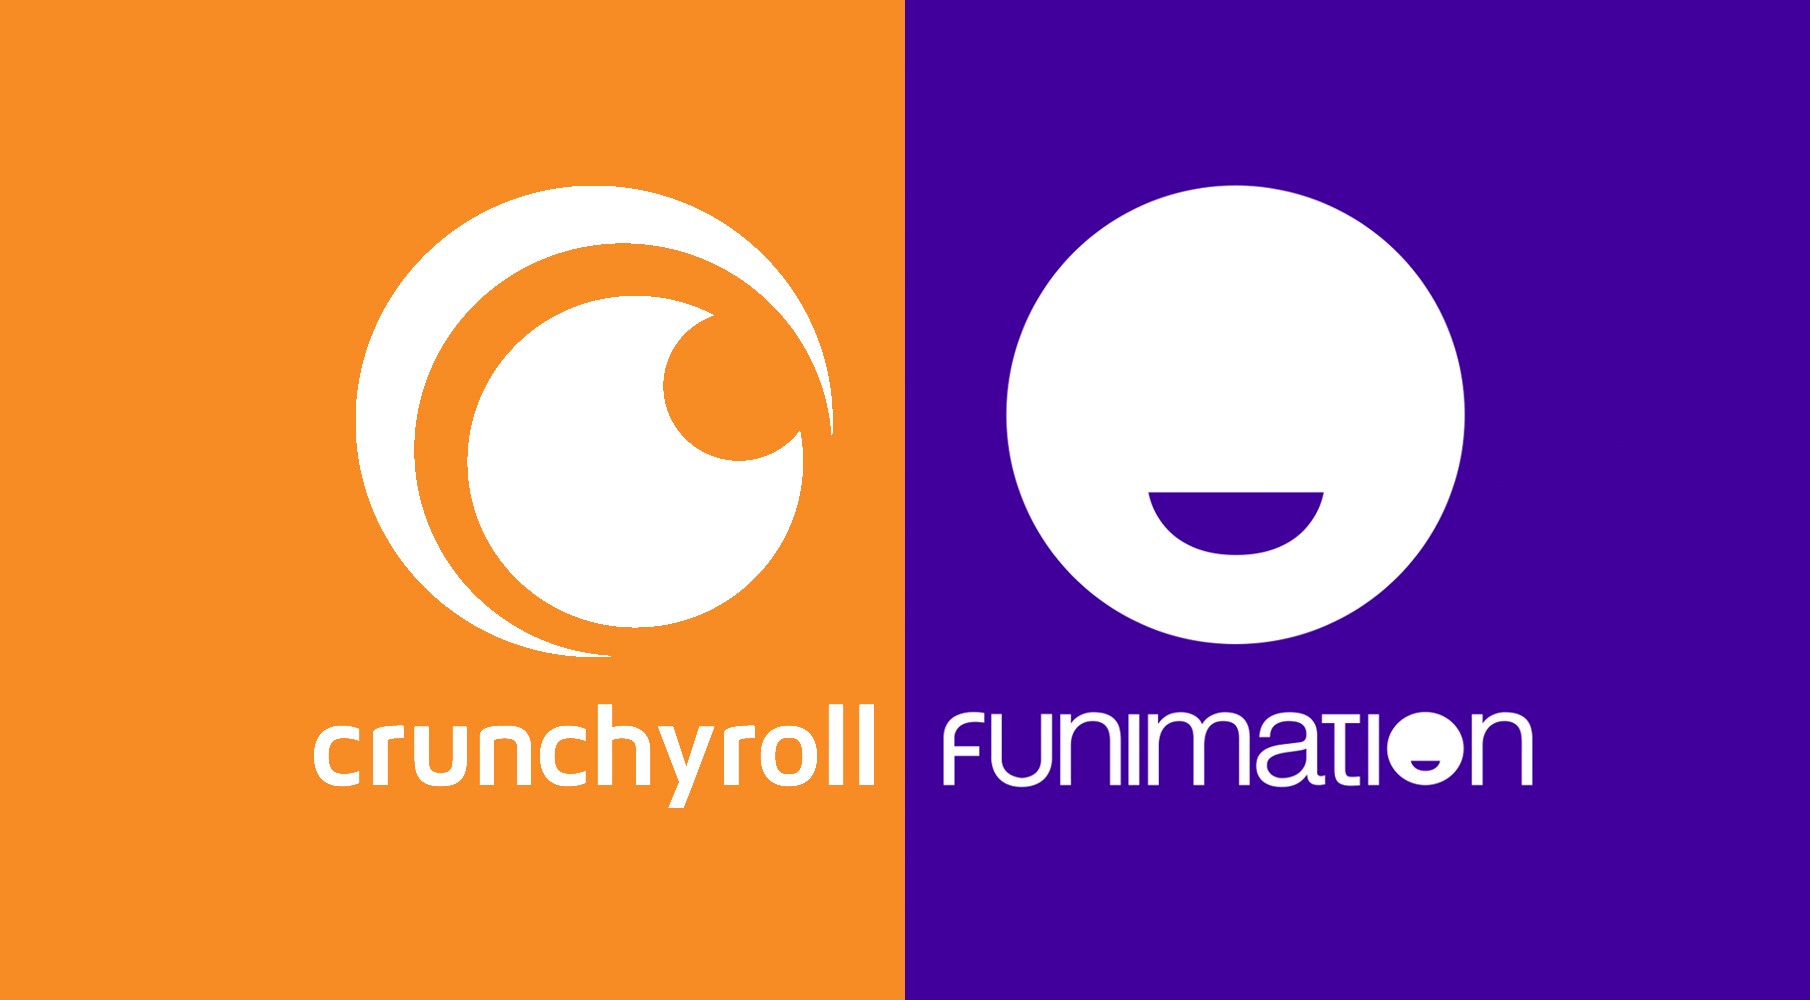 Crunchyroll / Funimation